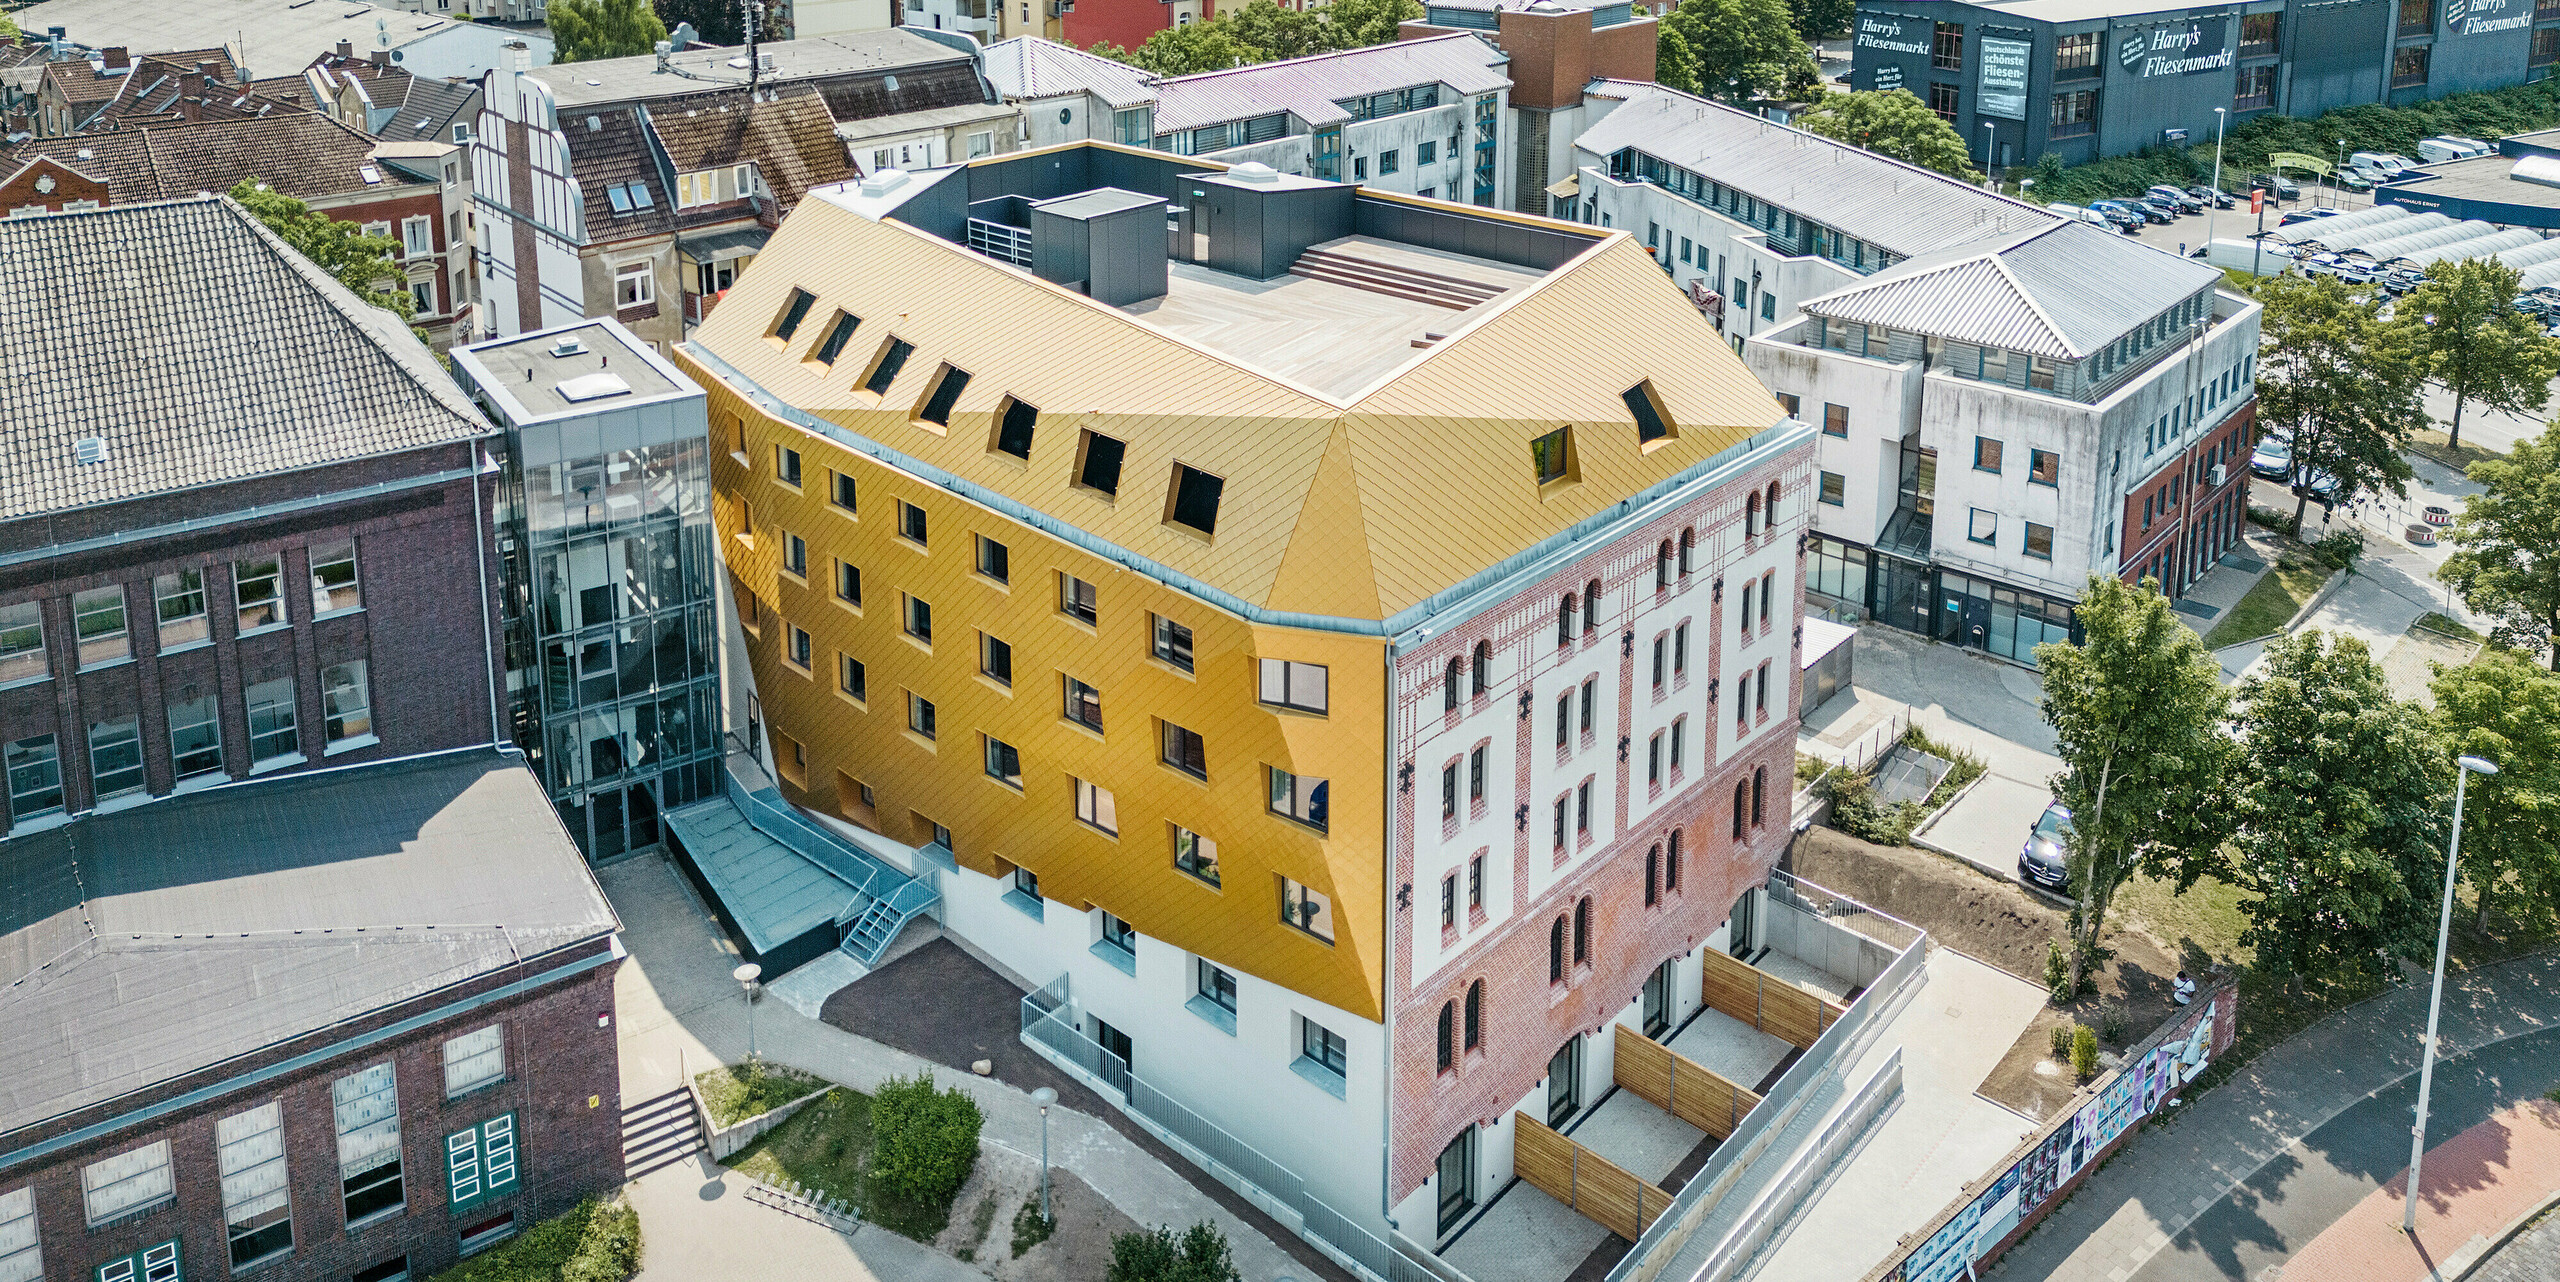 Vogelperspektive auf "The Station" in Kiel. Das Studentenwohnheim ragt im Stadtpanorama hervor durch die markanten Gebäudeteile aus PREFA Dach- und Wandrauten 29 × 29 in edlem Mayagold.